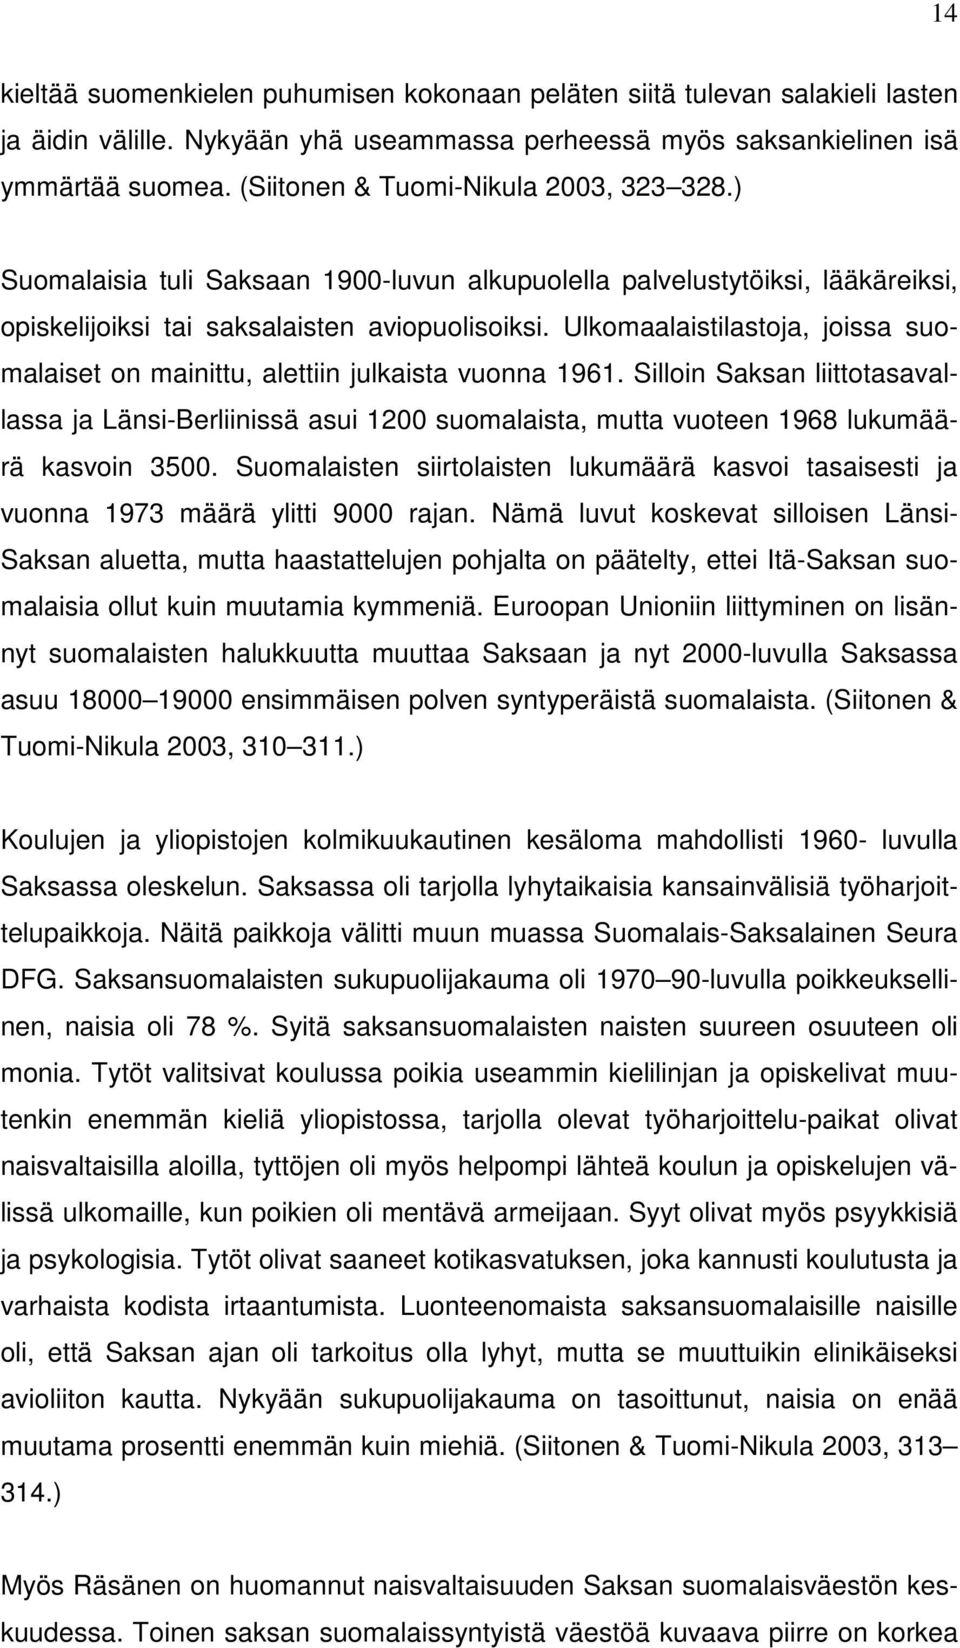 Ulkomaalaistilastoja, joissa suomalaiset on mainittu, alettiin julkaista vuonna 1961.